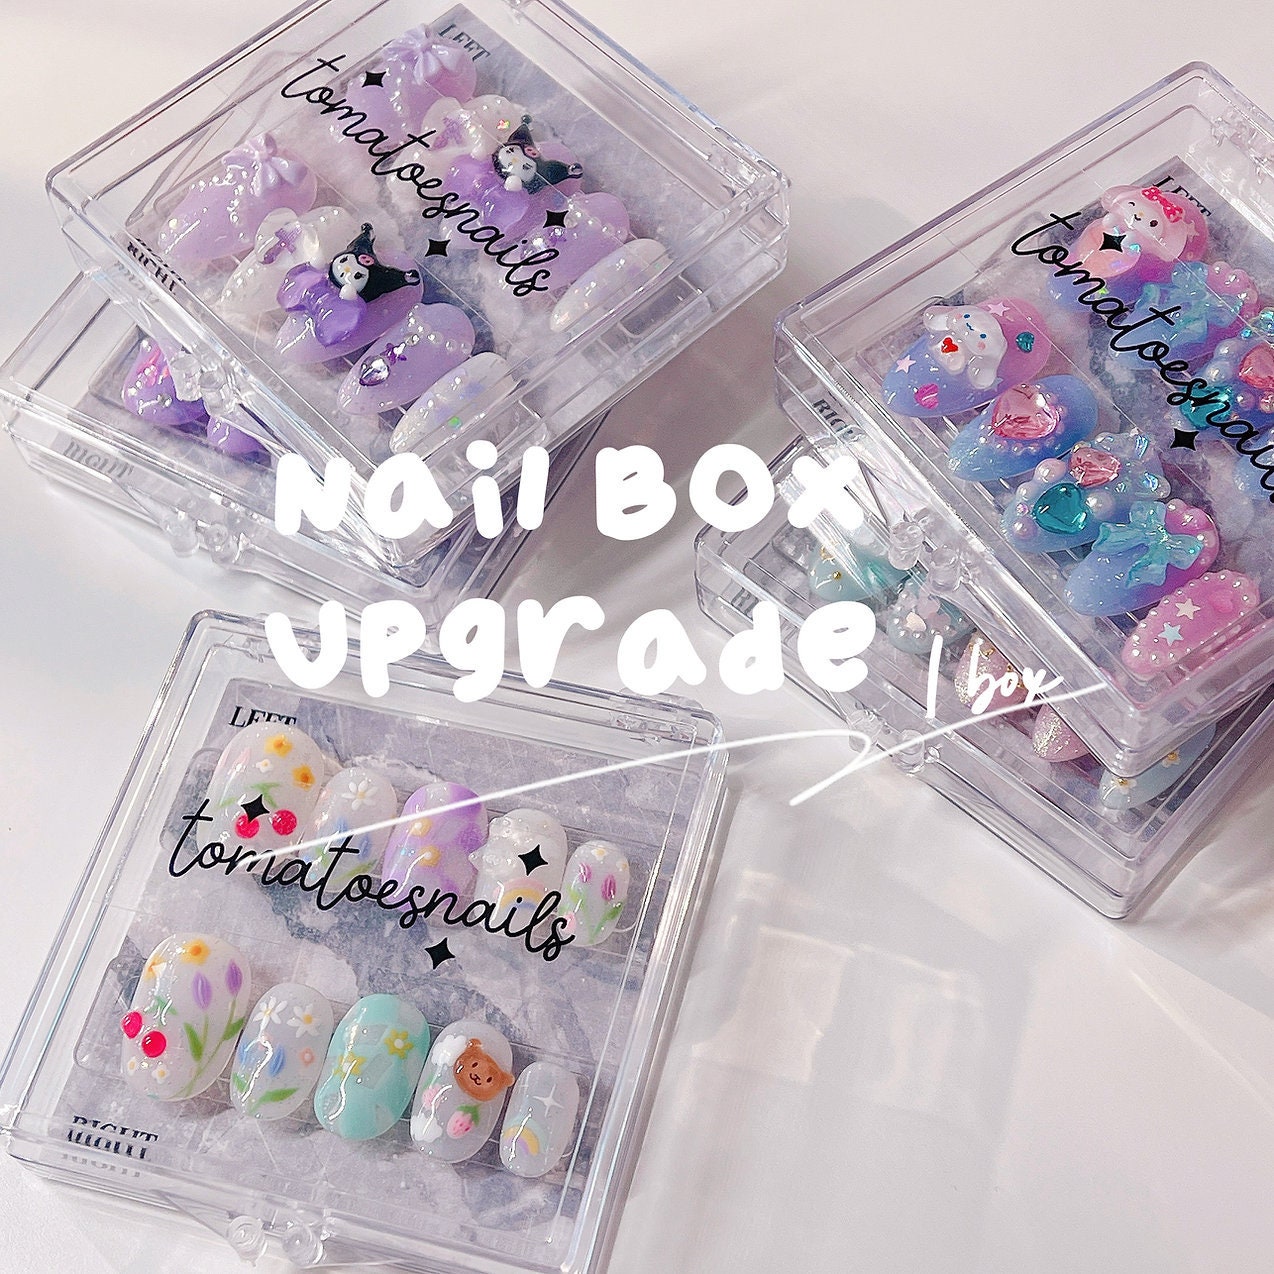 Nails Box Upgrade , 1 Box for Press-on Nails , Nails Storage Box , False  Nails Box , Nails Gift Box , Nails Packaging Box 